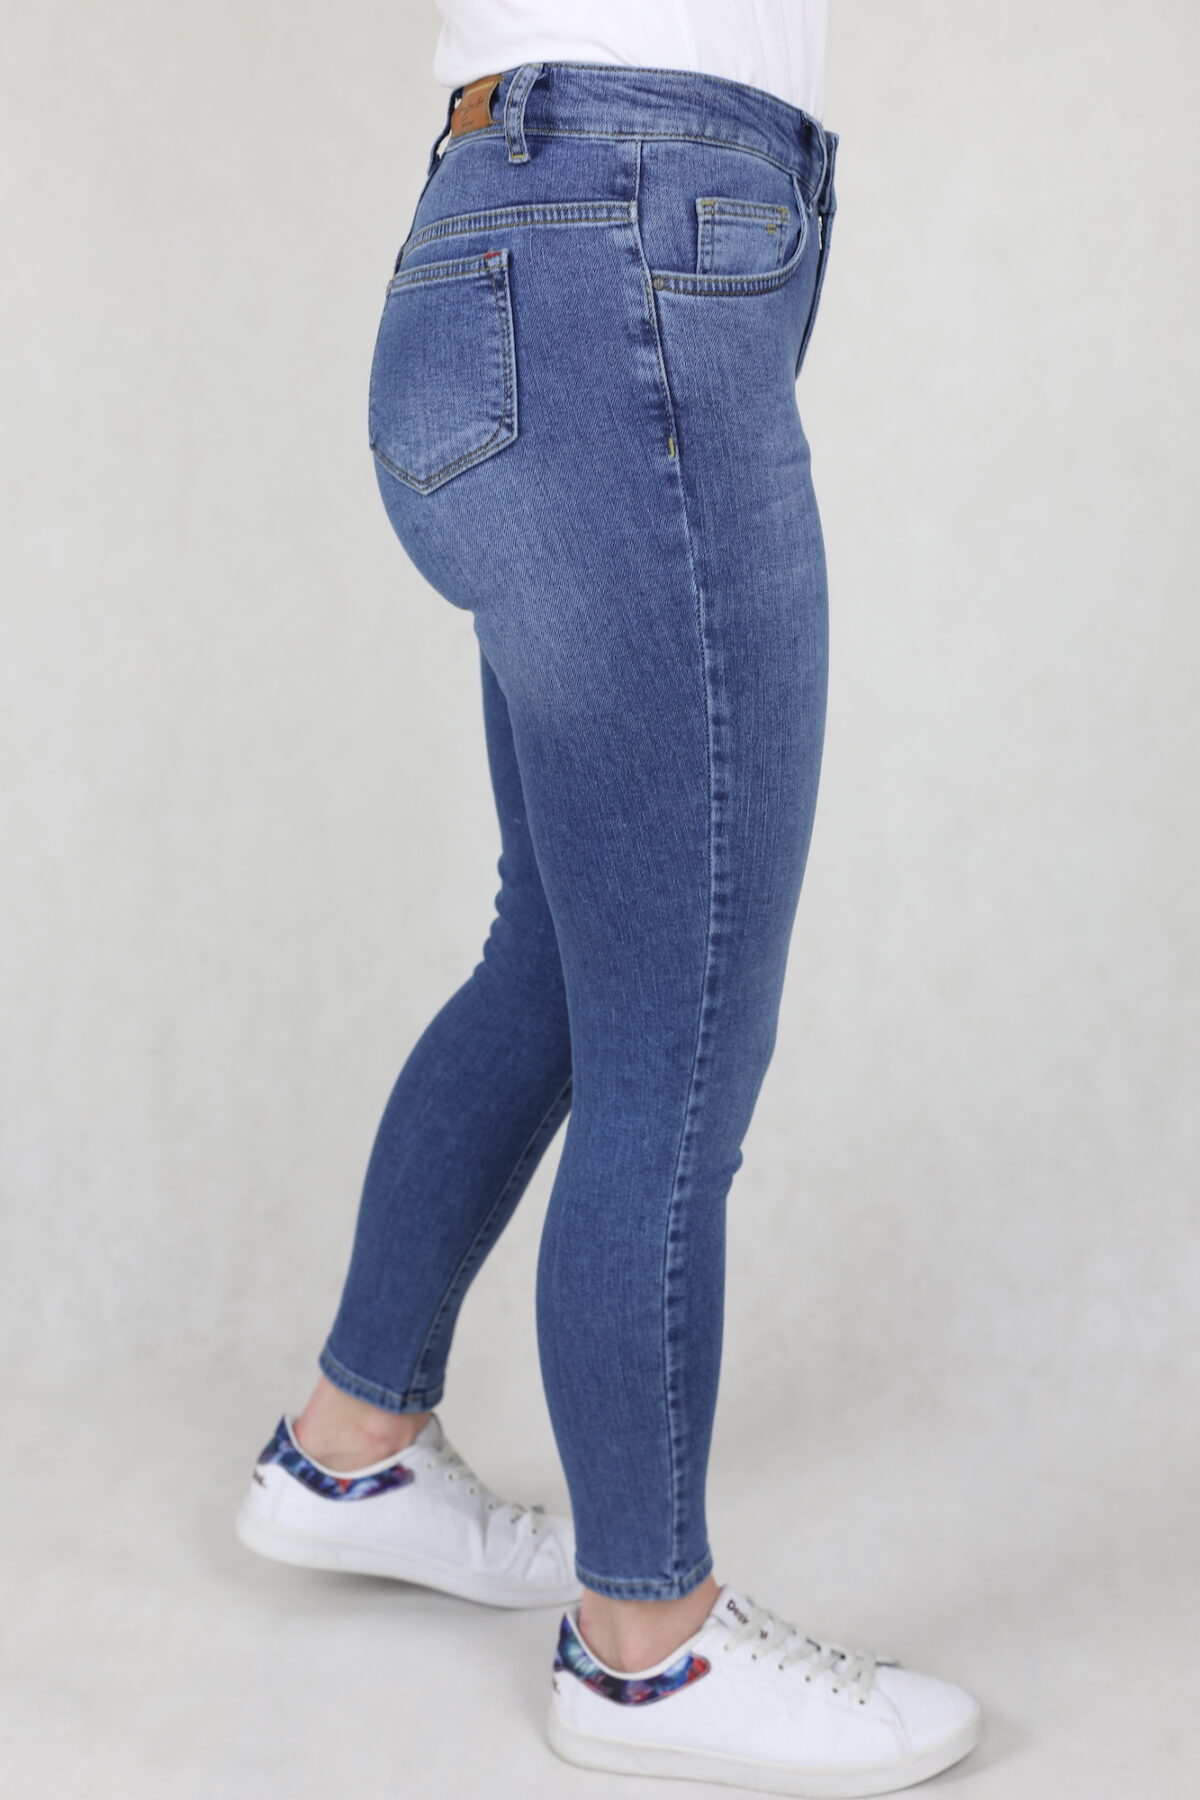 Damskie jeansy comfort strecz, niebieskie, mocne przetarcia, nogawka zwężana – slim